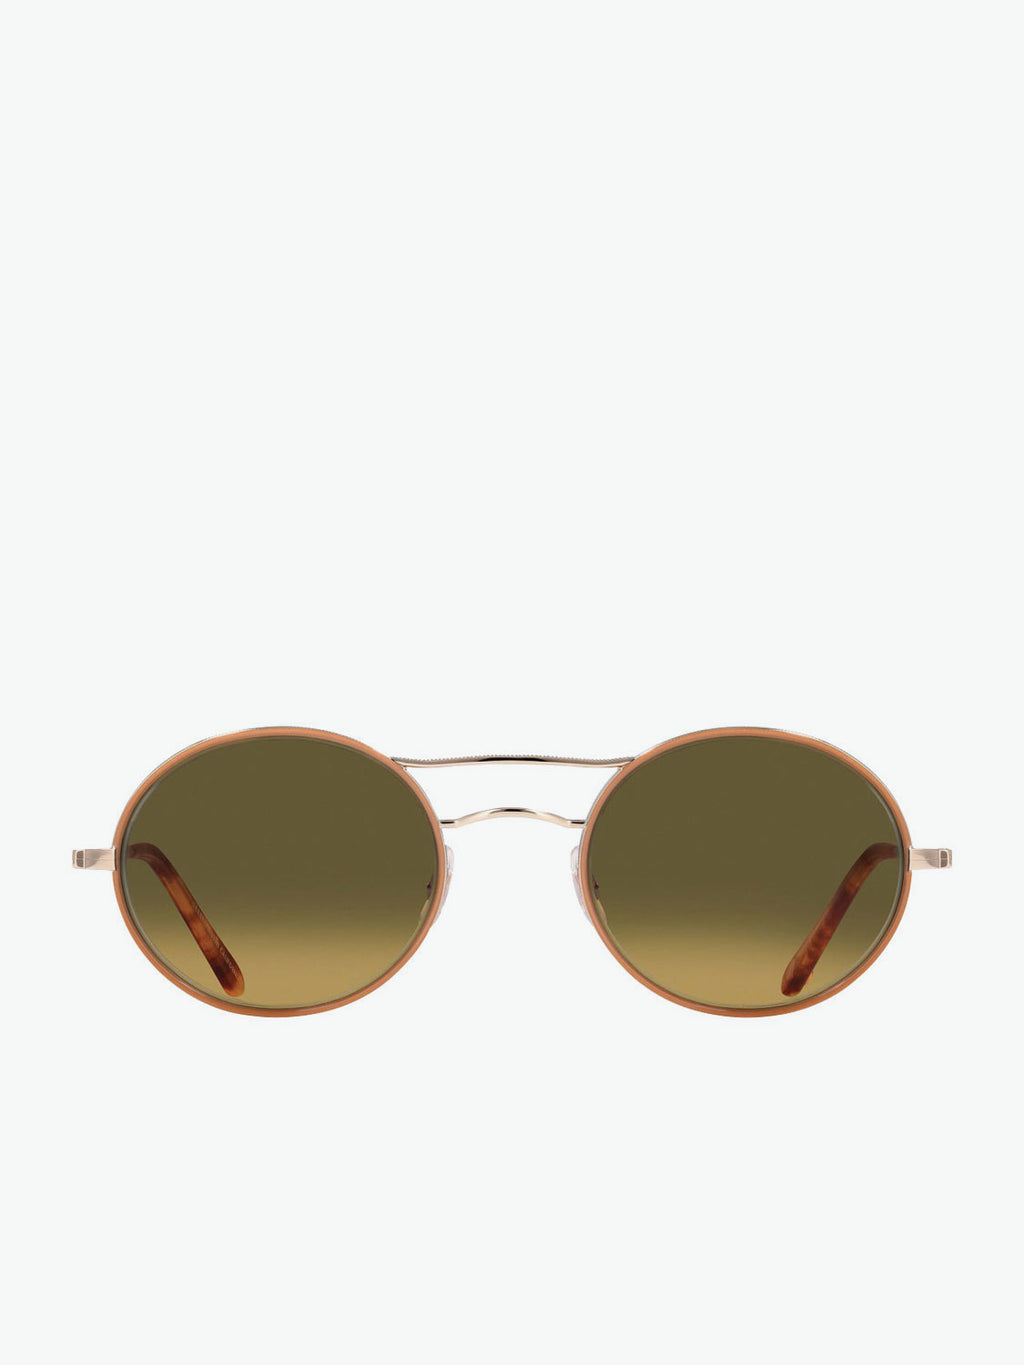 Garrett Leight Camel-Gold Oval Sunglasses | A